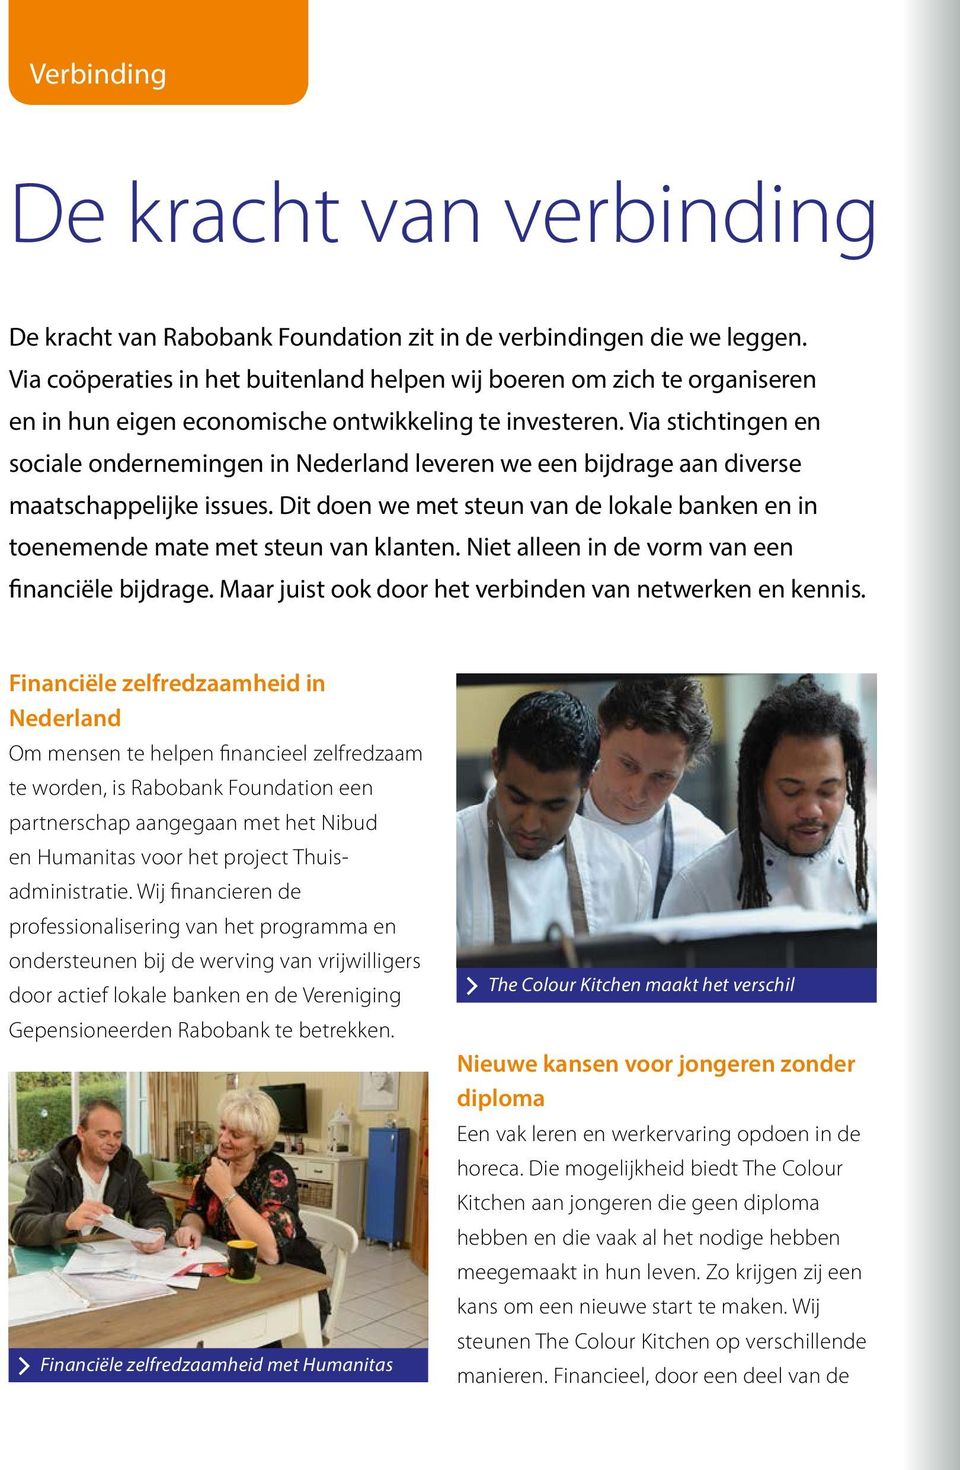 Via stichtingen en sociale ondernemingen in Nederland leveren we een bijdrage aan diverse maatschappelijke issues.